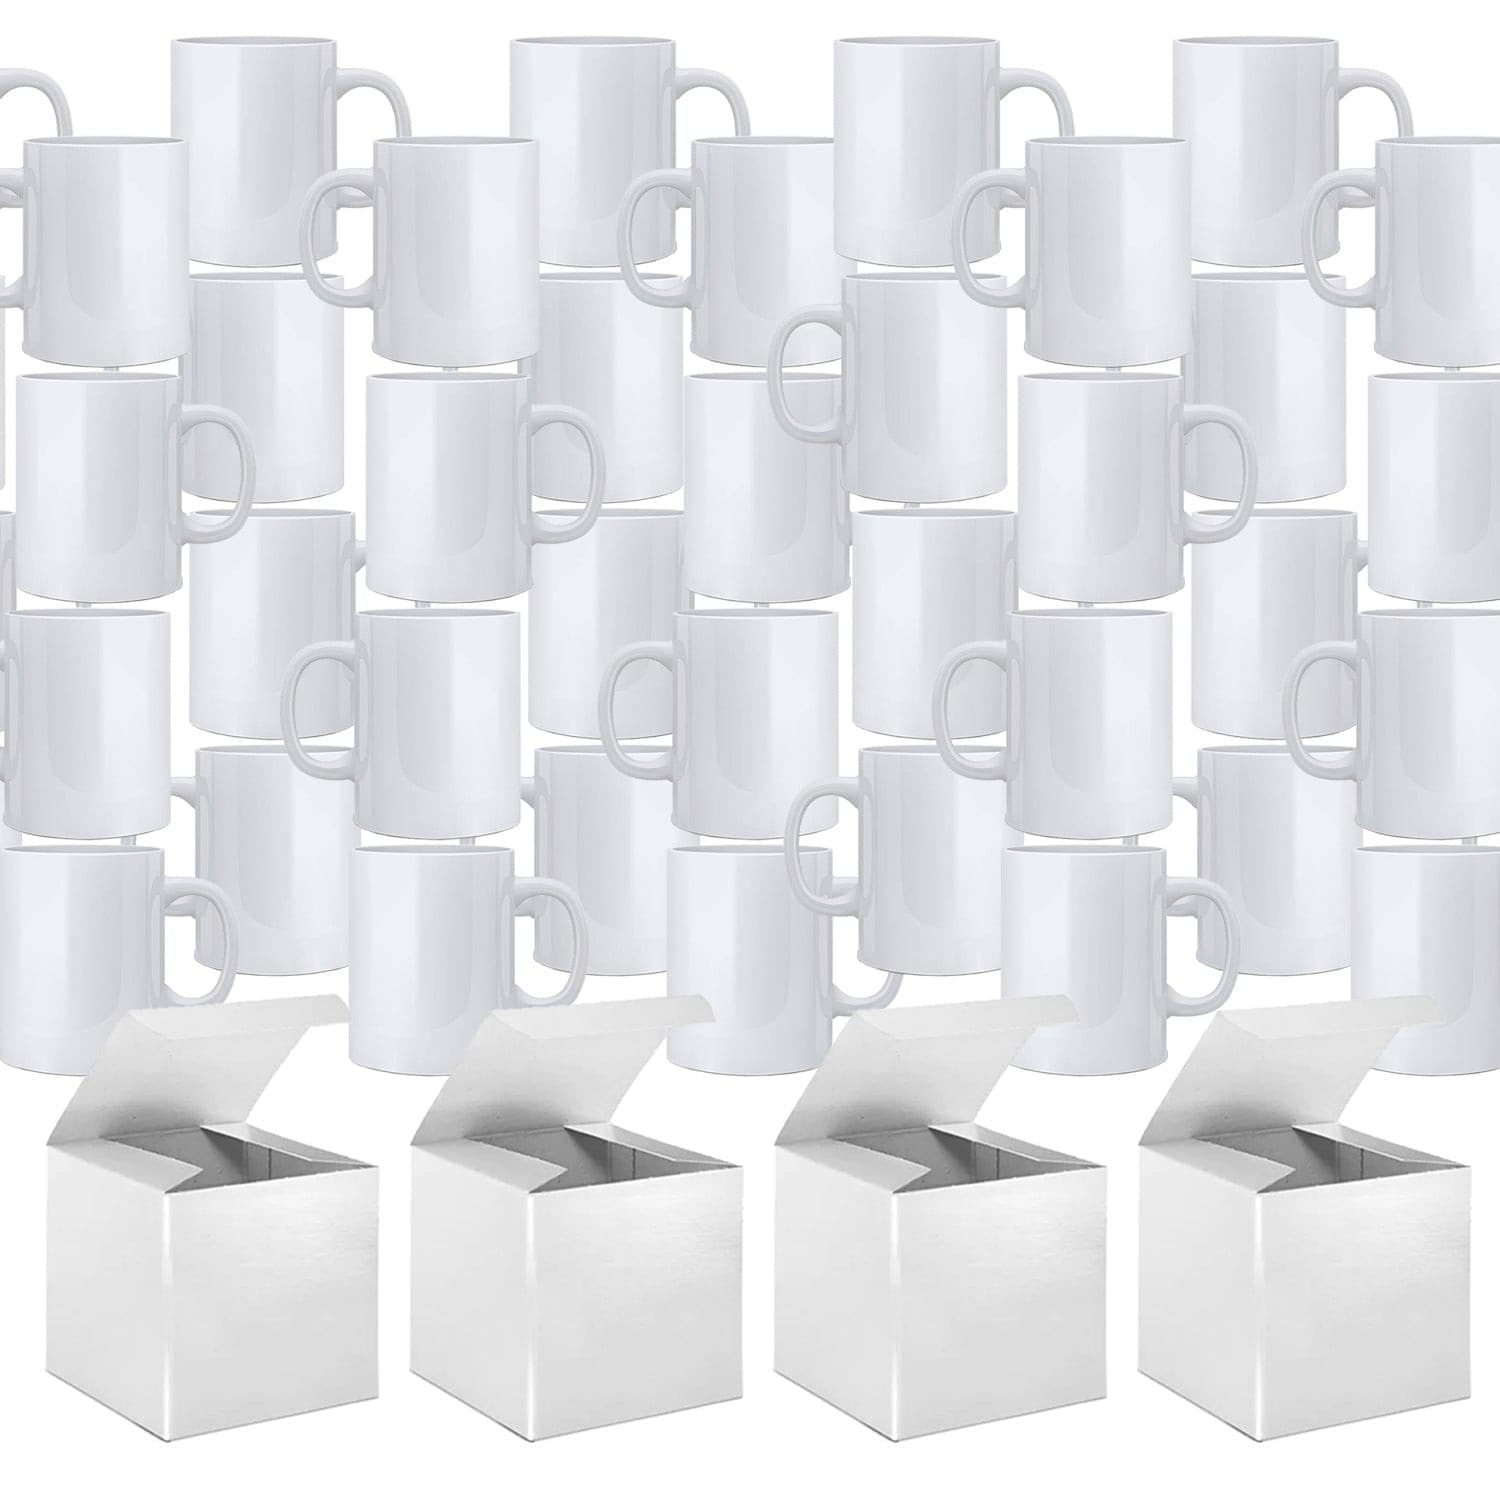 FECBK Sublimation Mugs 36 Pack Sublimation Mugs Blank 11oz Ceramic  Sublimation Coffee Mugs with Spoo…See more FECBK Sublimation Mugs 36 Pack